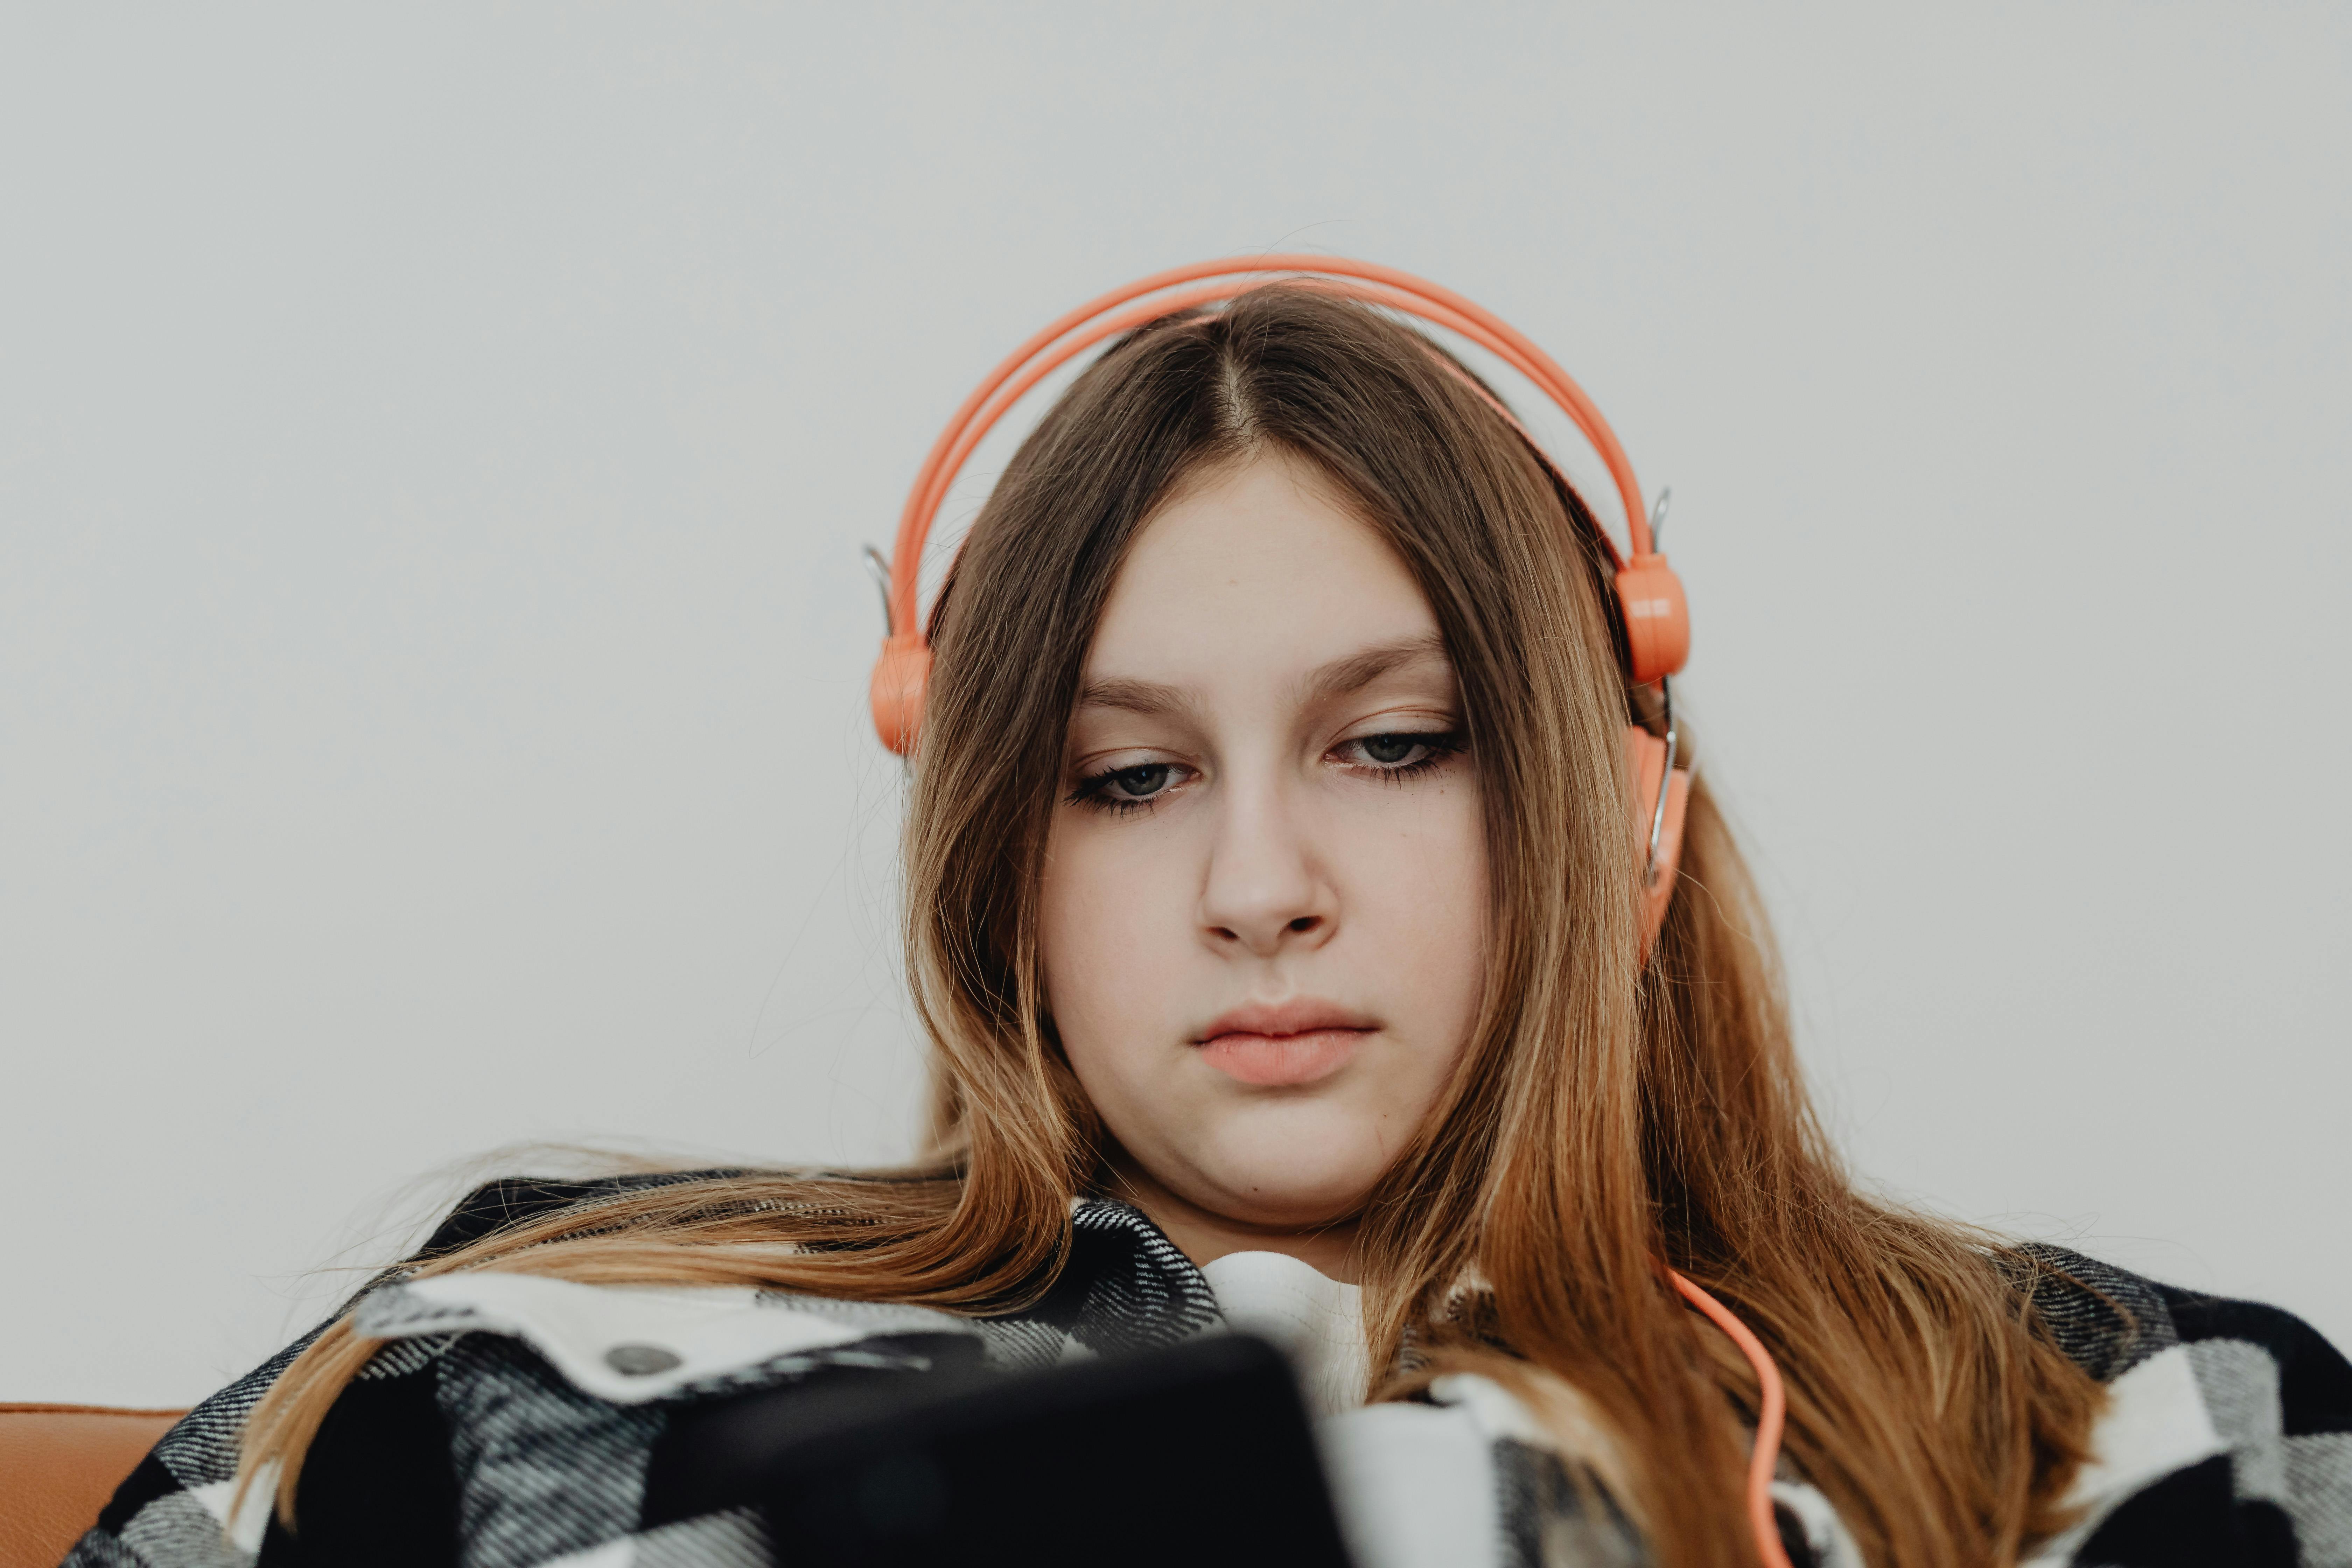 A teenage girl engrossed in her phone | Source: Pexels